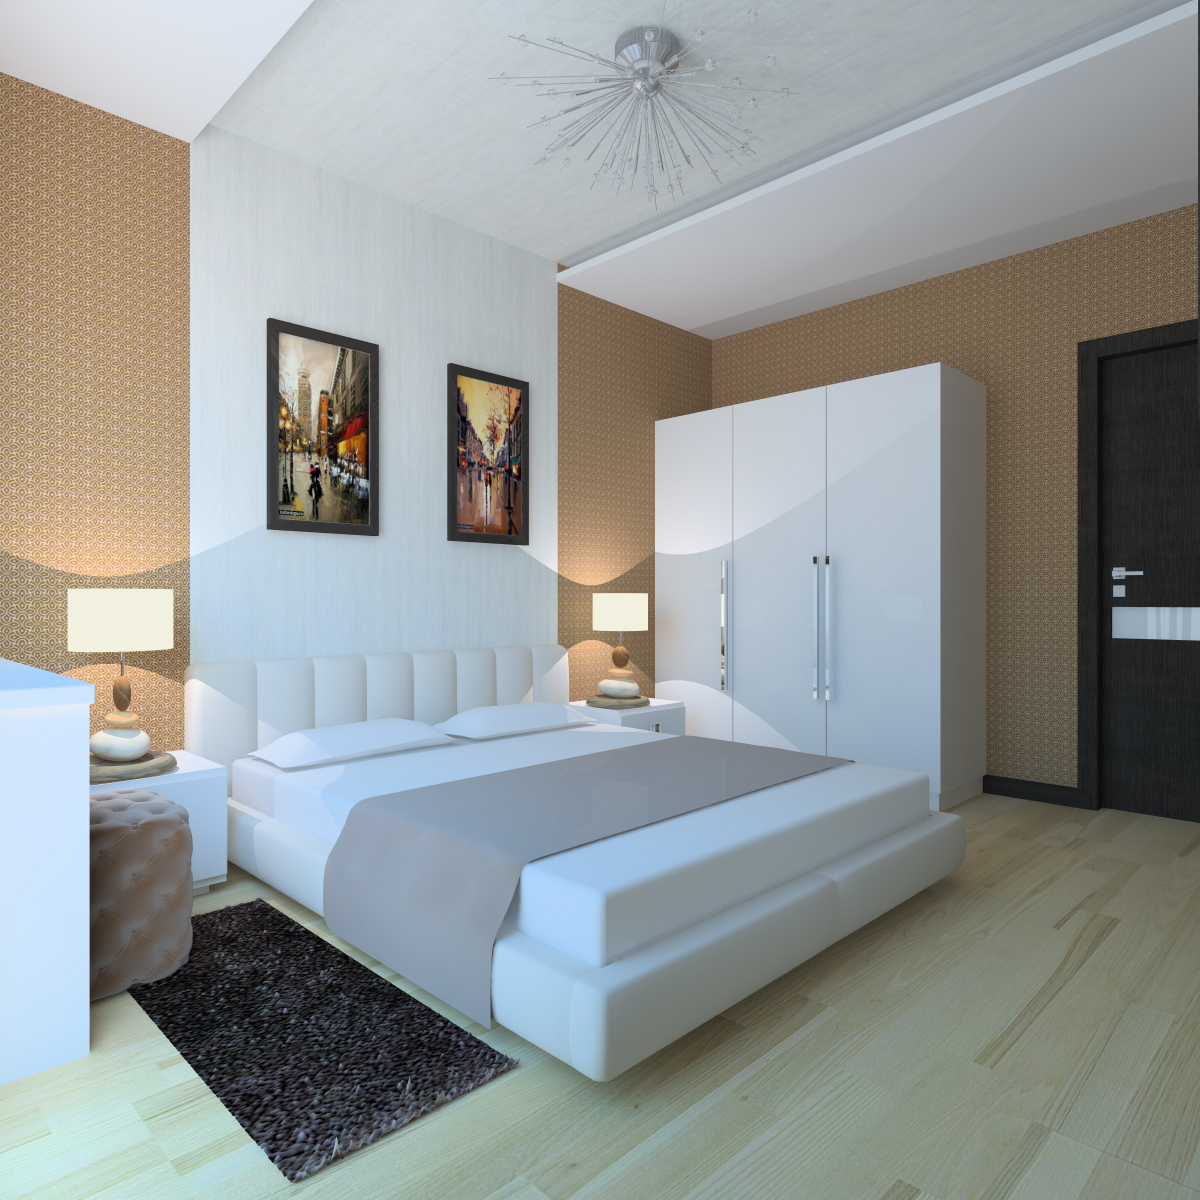 Модерн минимализм спальни, дизайн интерьера спальни в стиле хай тек